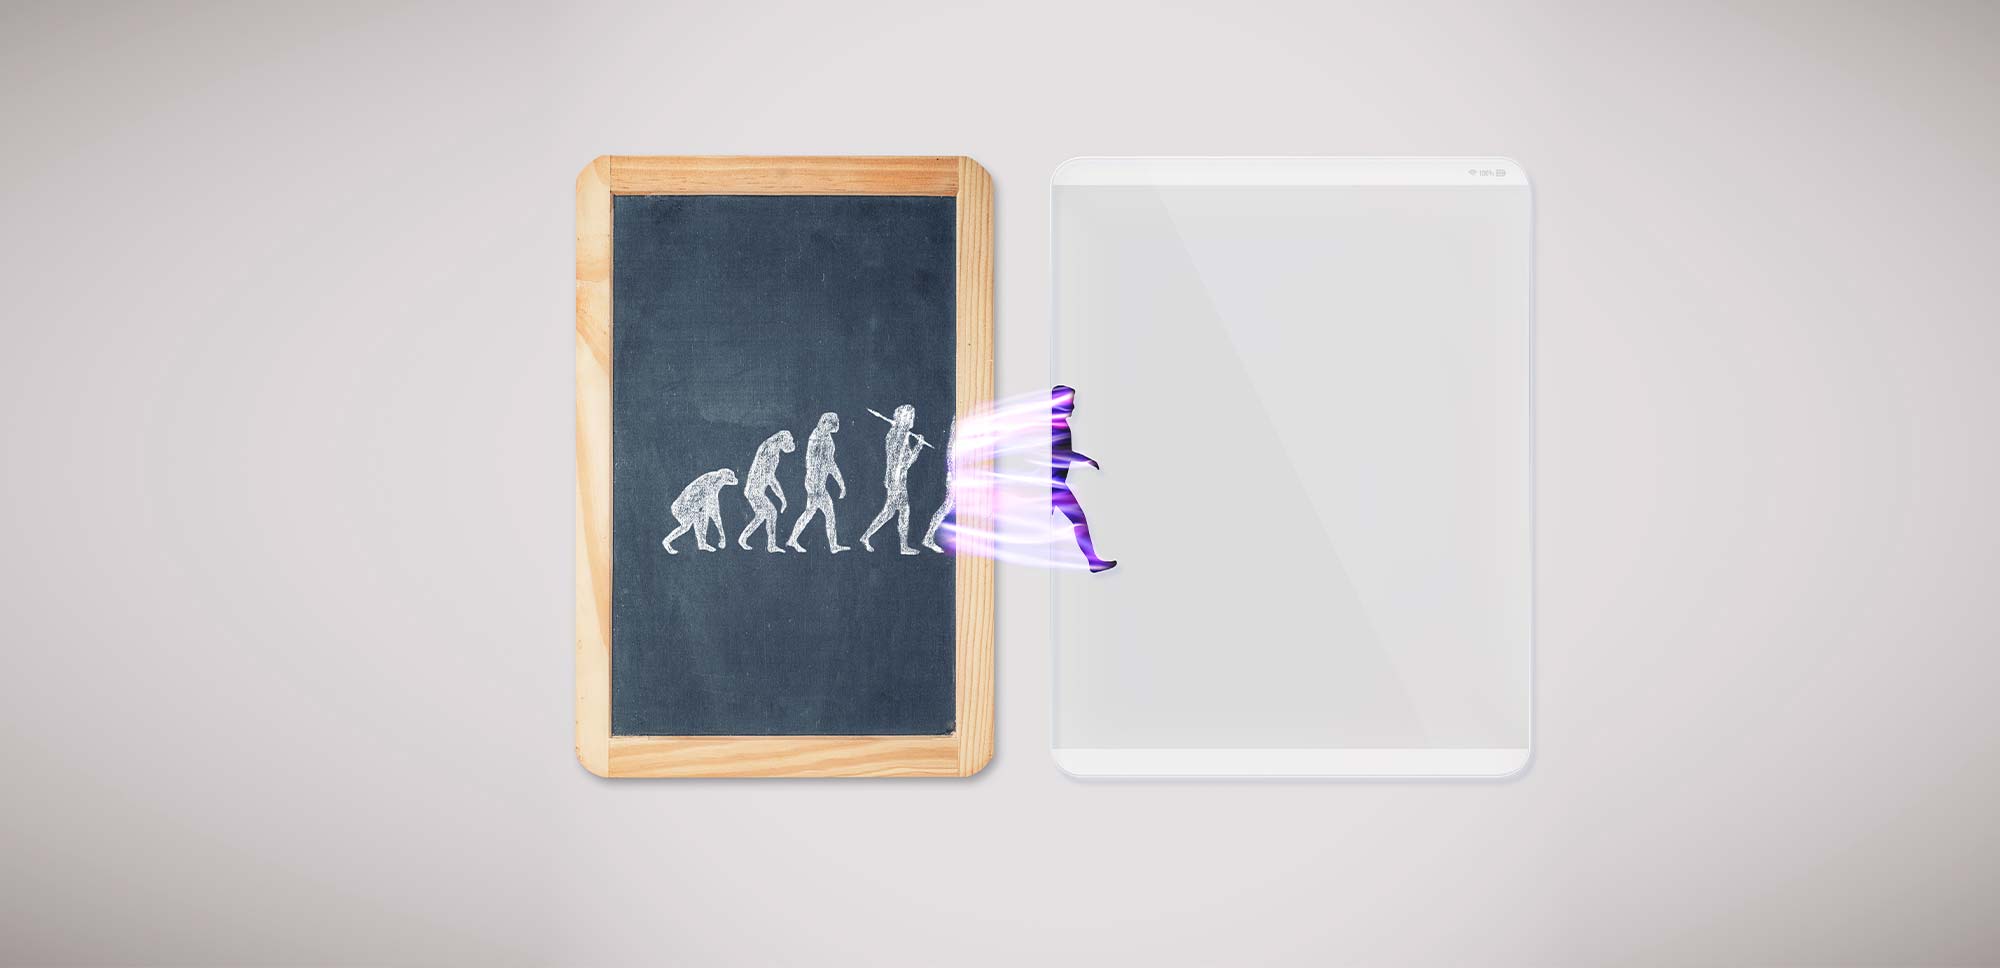 pizarra evolucion humana tablet digital nuevos espacios trabajo